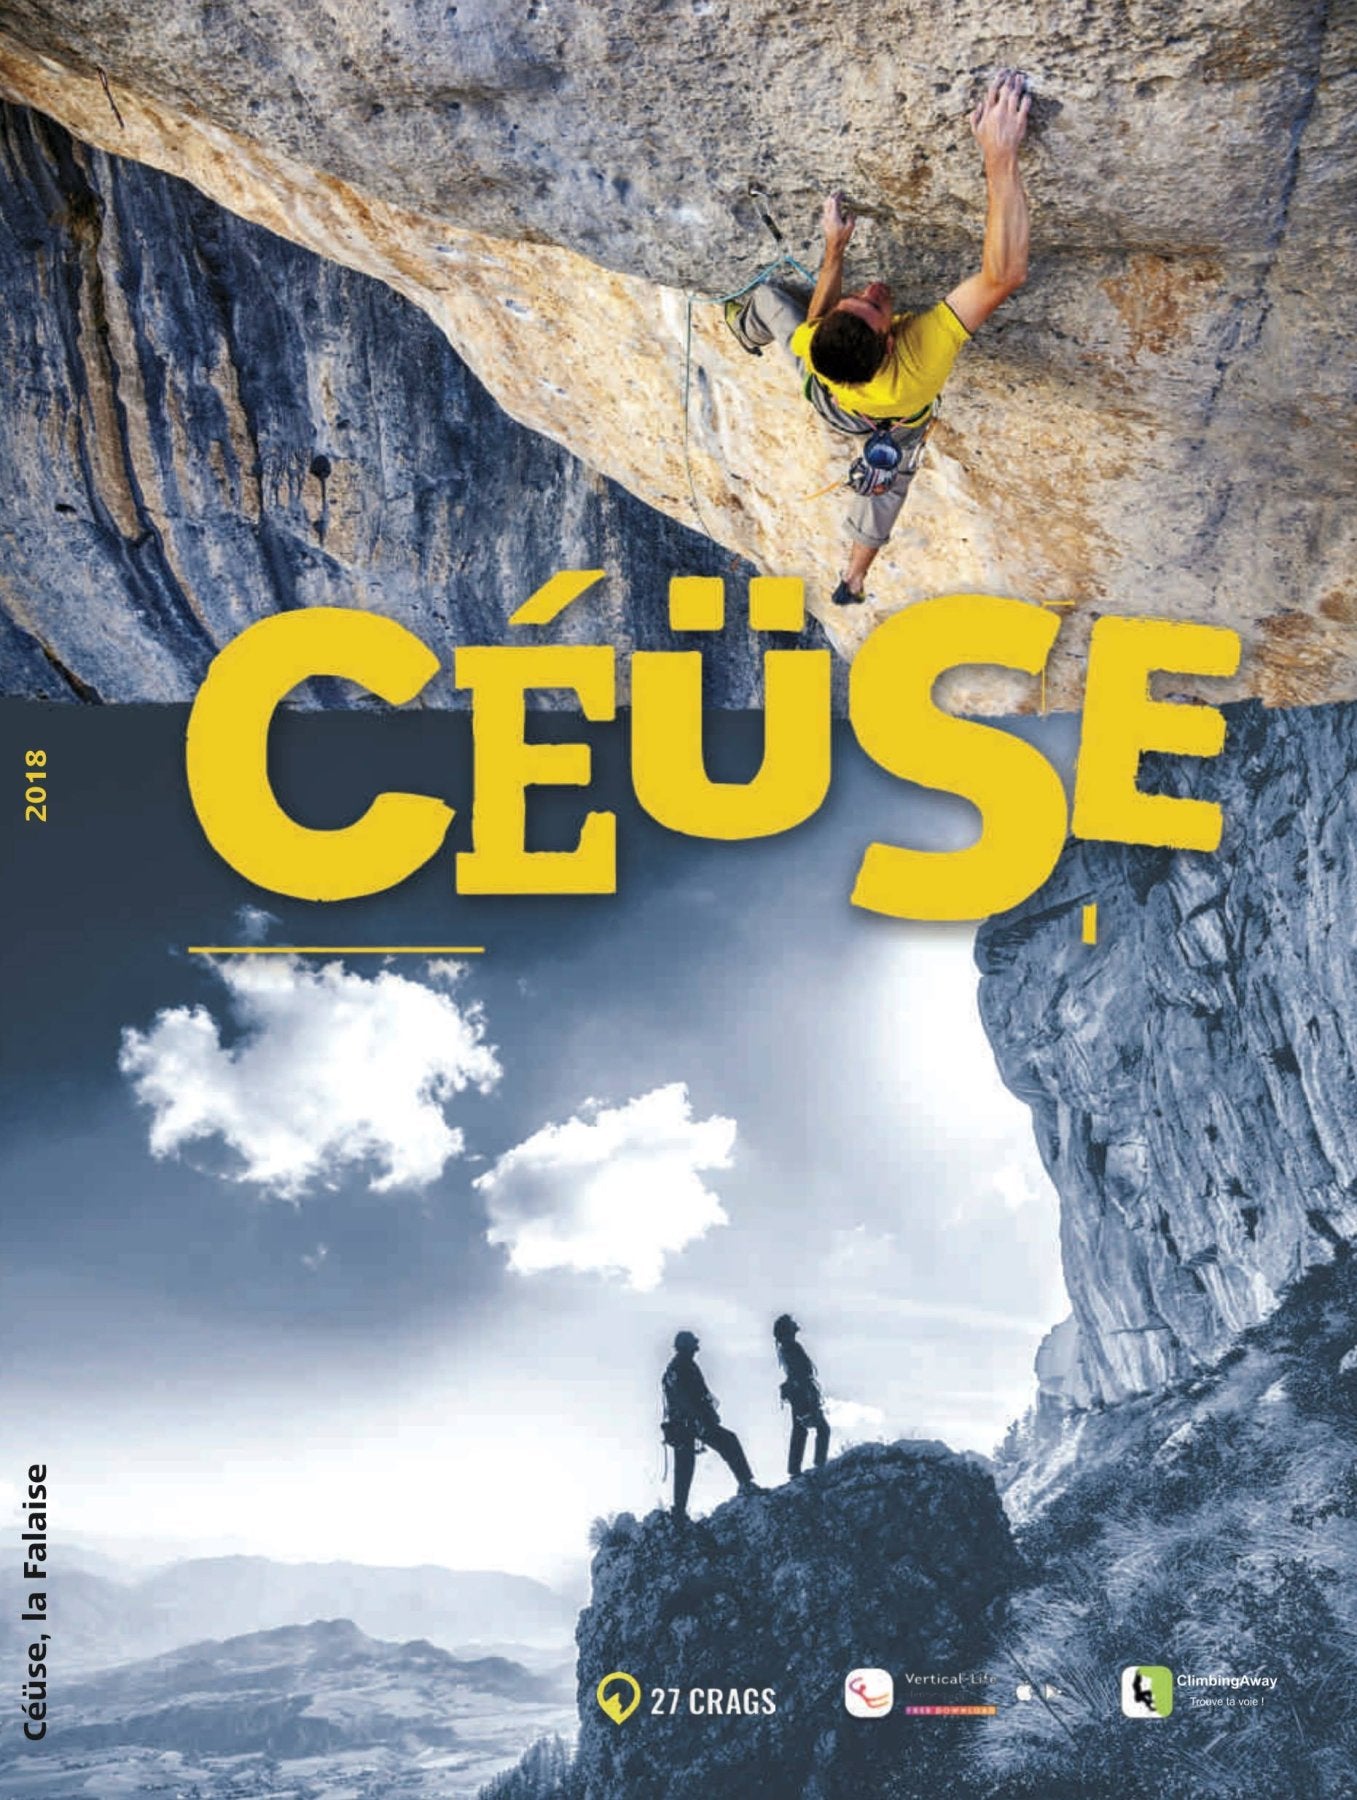 Céüse (2018), klimgids